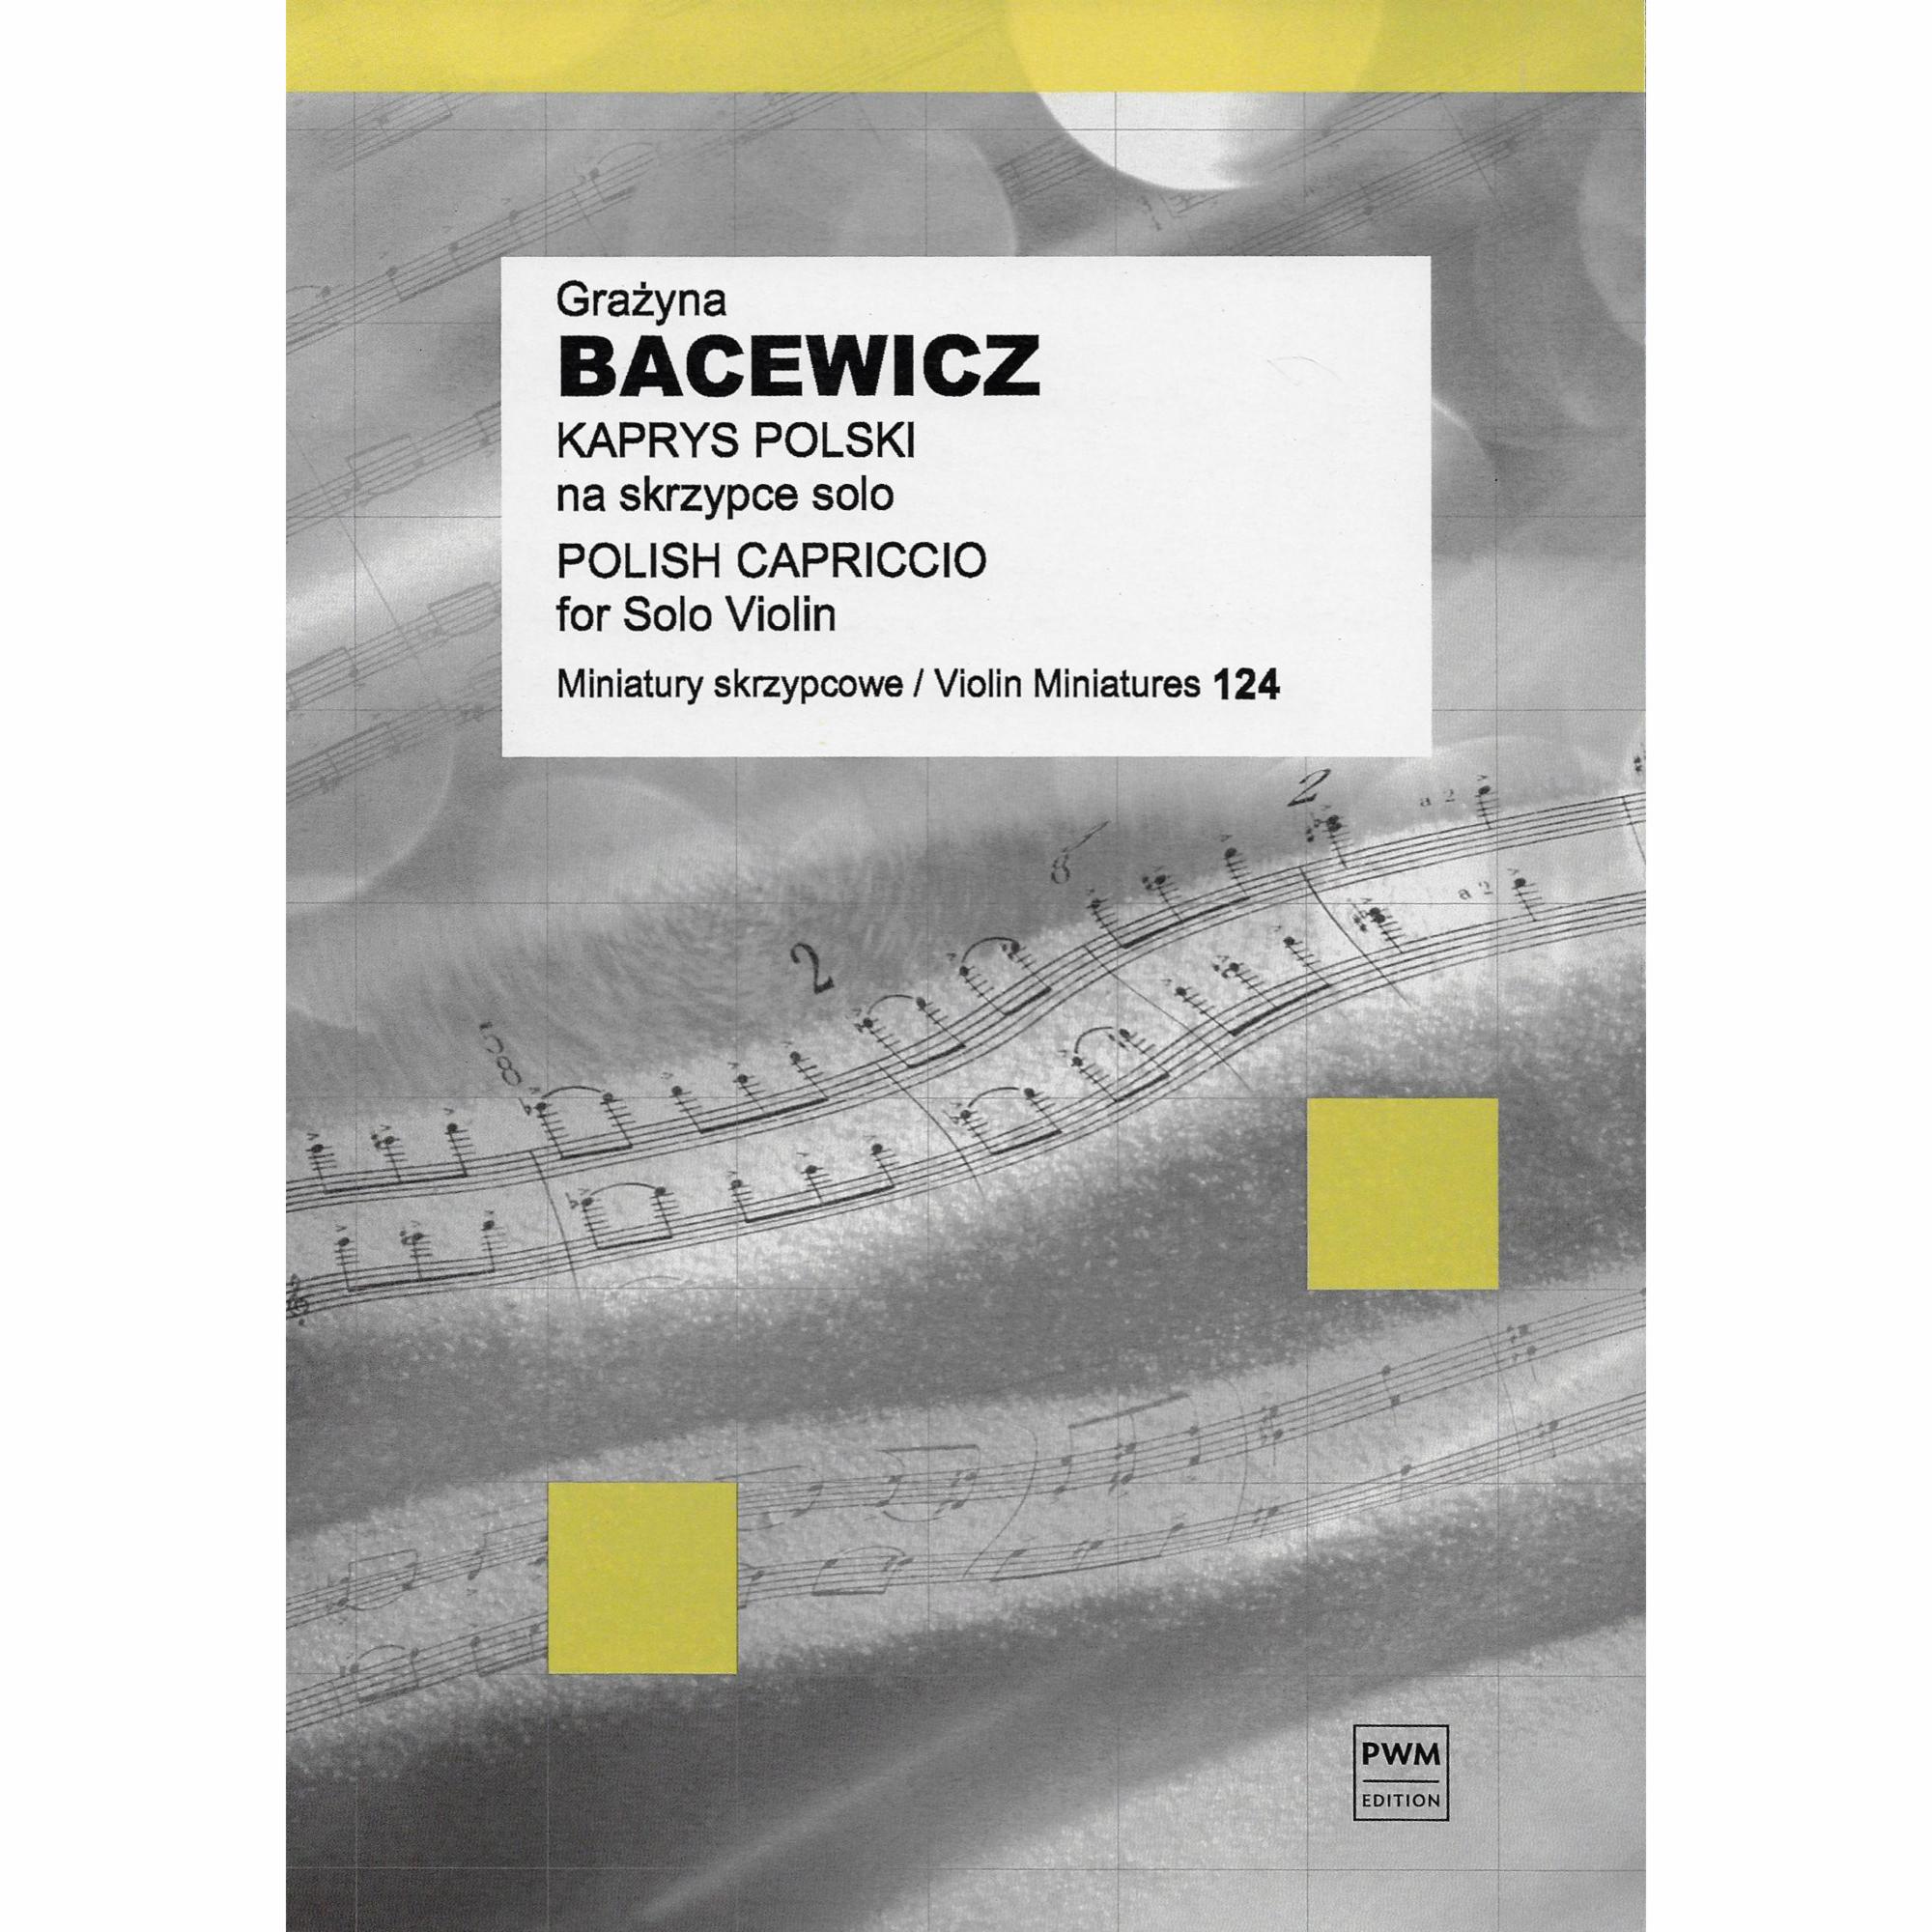 Bacewicz -- Polish Caprice for Solo Violin